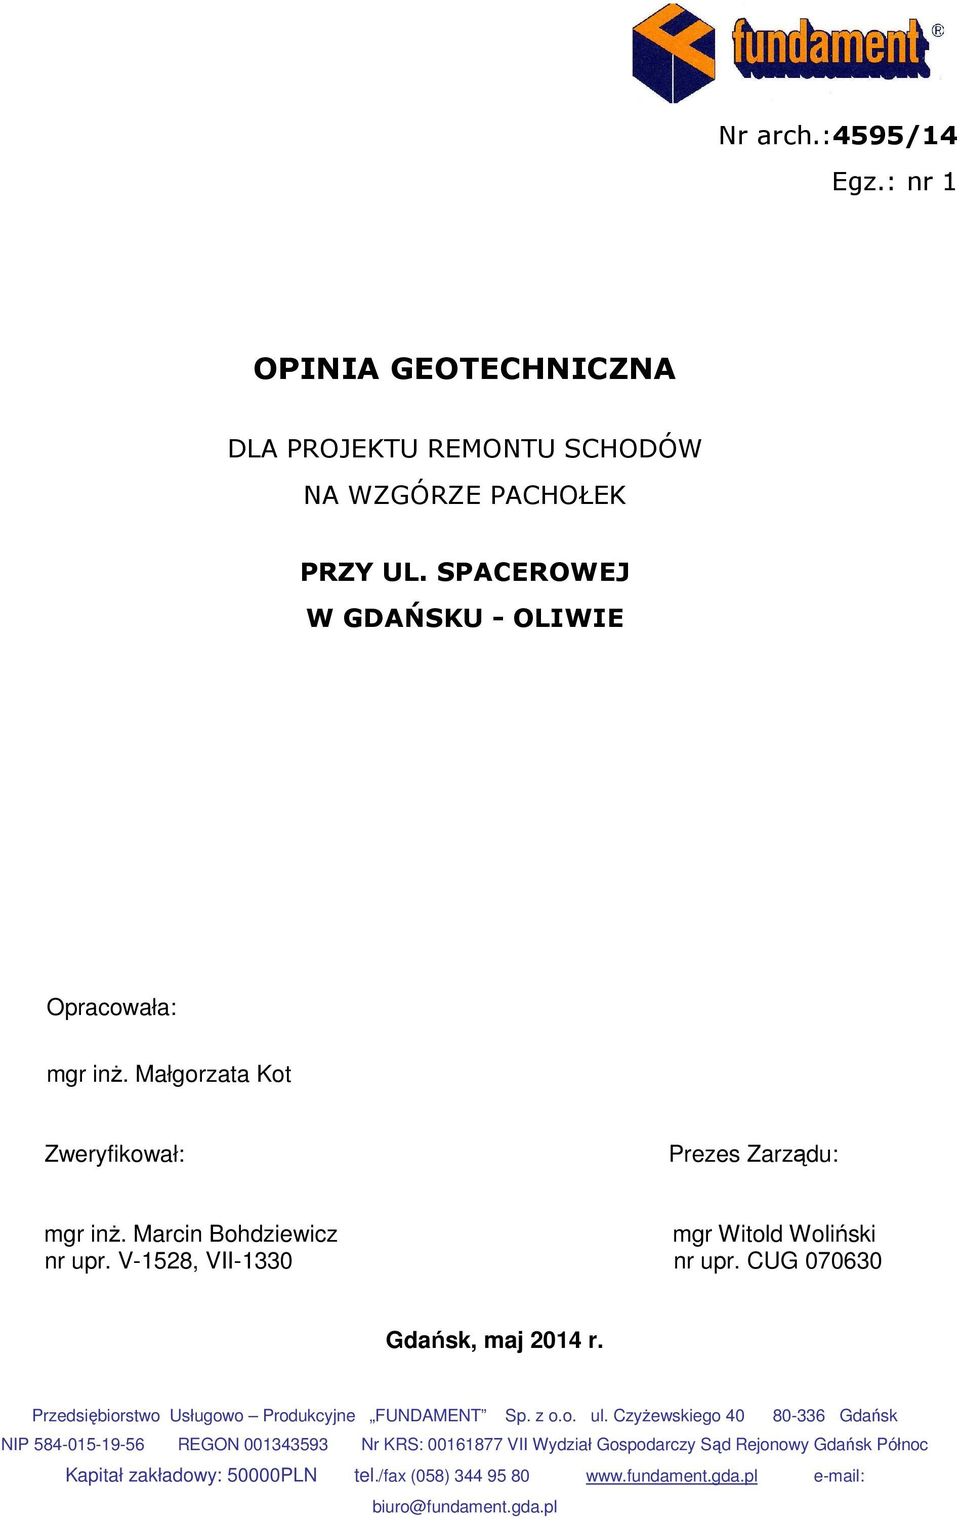 V-1528, VII-1330 nr upr. CUG 070630 Gdańsk, maj 2014 r. Przedsiębiorstwo Usługowo Produkcyjne FUNDAMENT Sp. z o.o. ul.